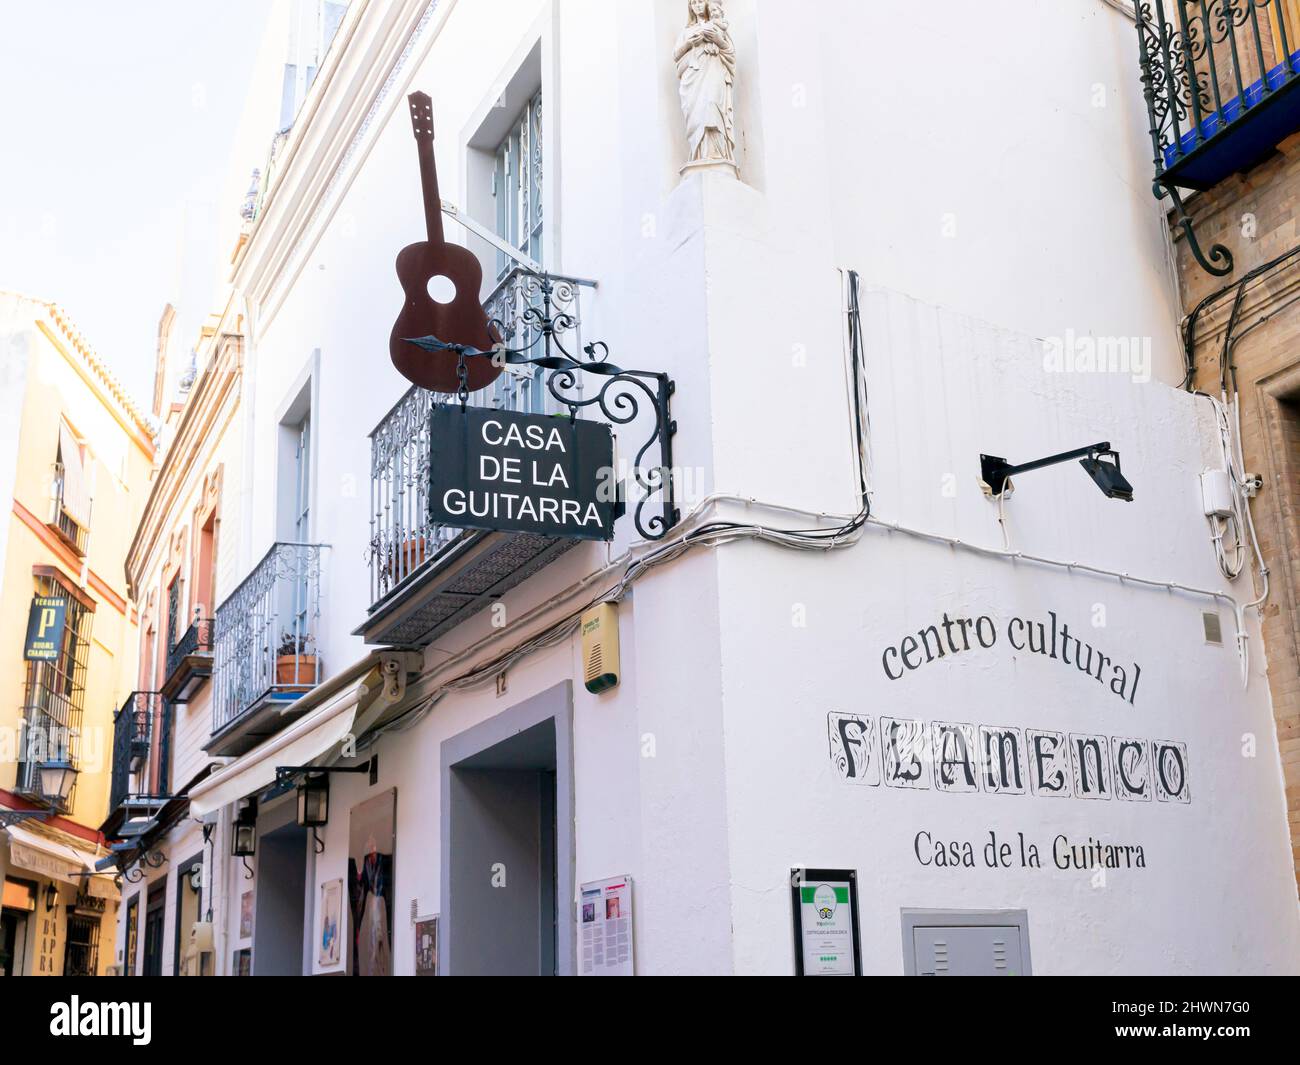 Casa de la Guitarra flamenco place and museum located in the 18th century  house in Calle Meson del Moro, Seville, Spain Stock Photo - Alamy